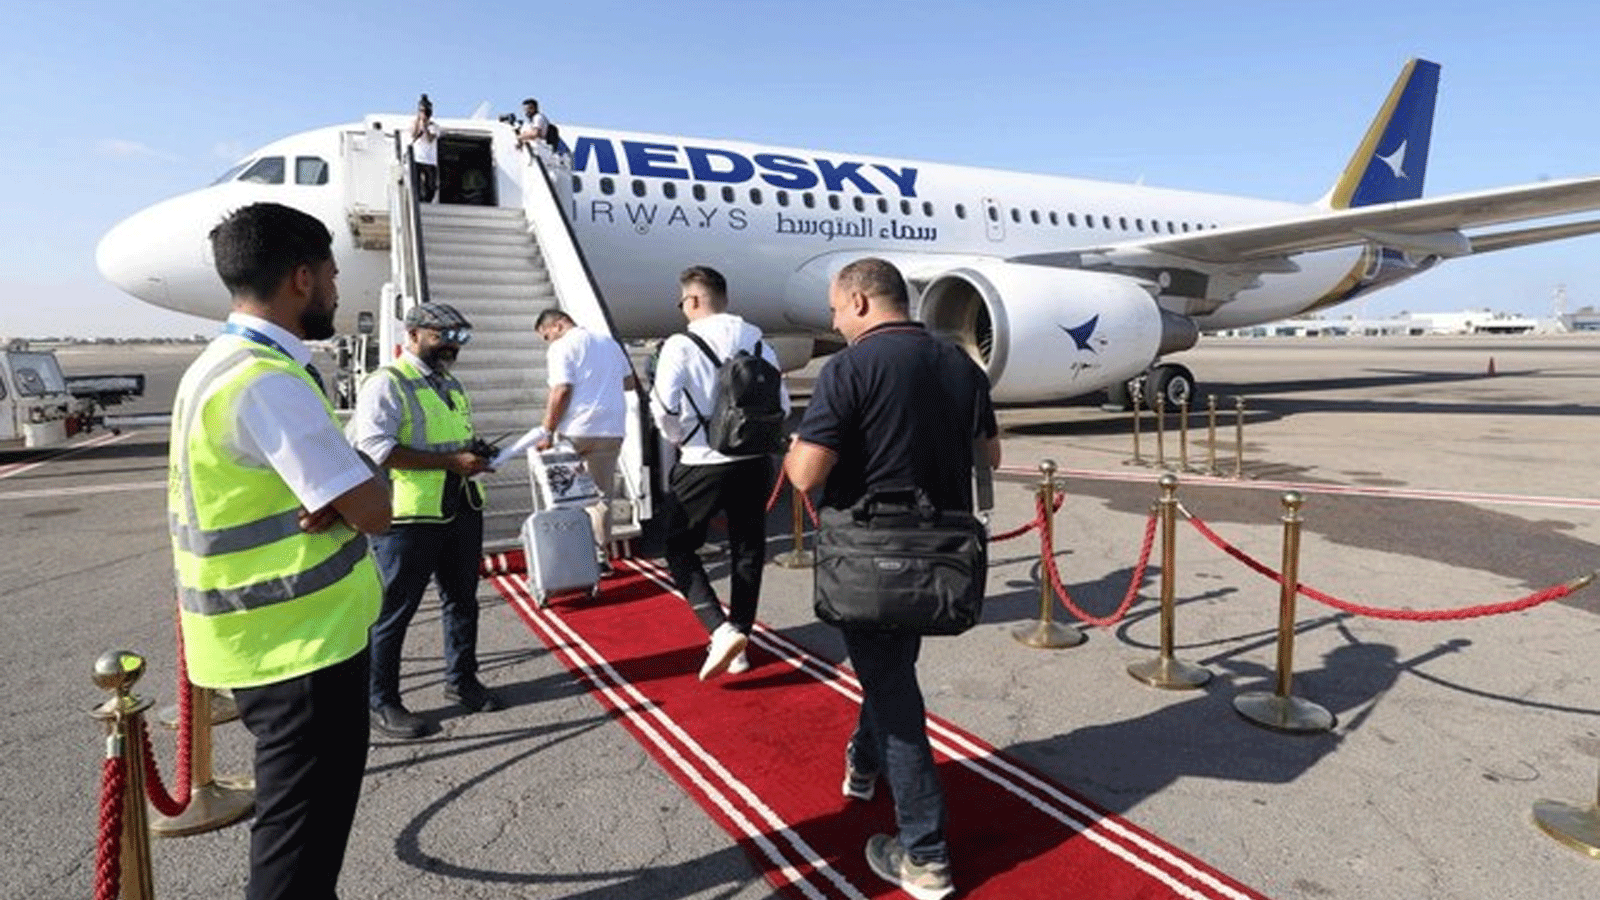 ركاب على متن أول رحلة من طرابلس إلى روما في 30 سبتمبر(أيلول) 2023 بعد أن رفعت الحكومة الإيطالية الحظر الجوي الذي فرضته منذ 10 سنوات على الطيران المدني الليبي